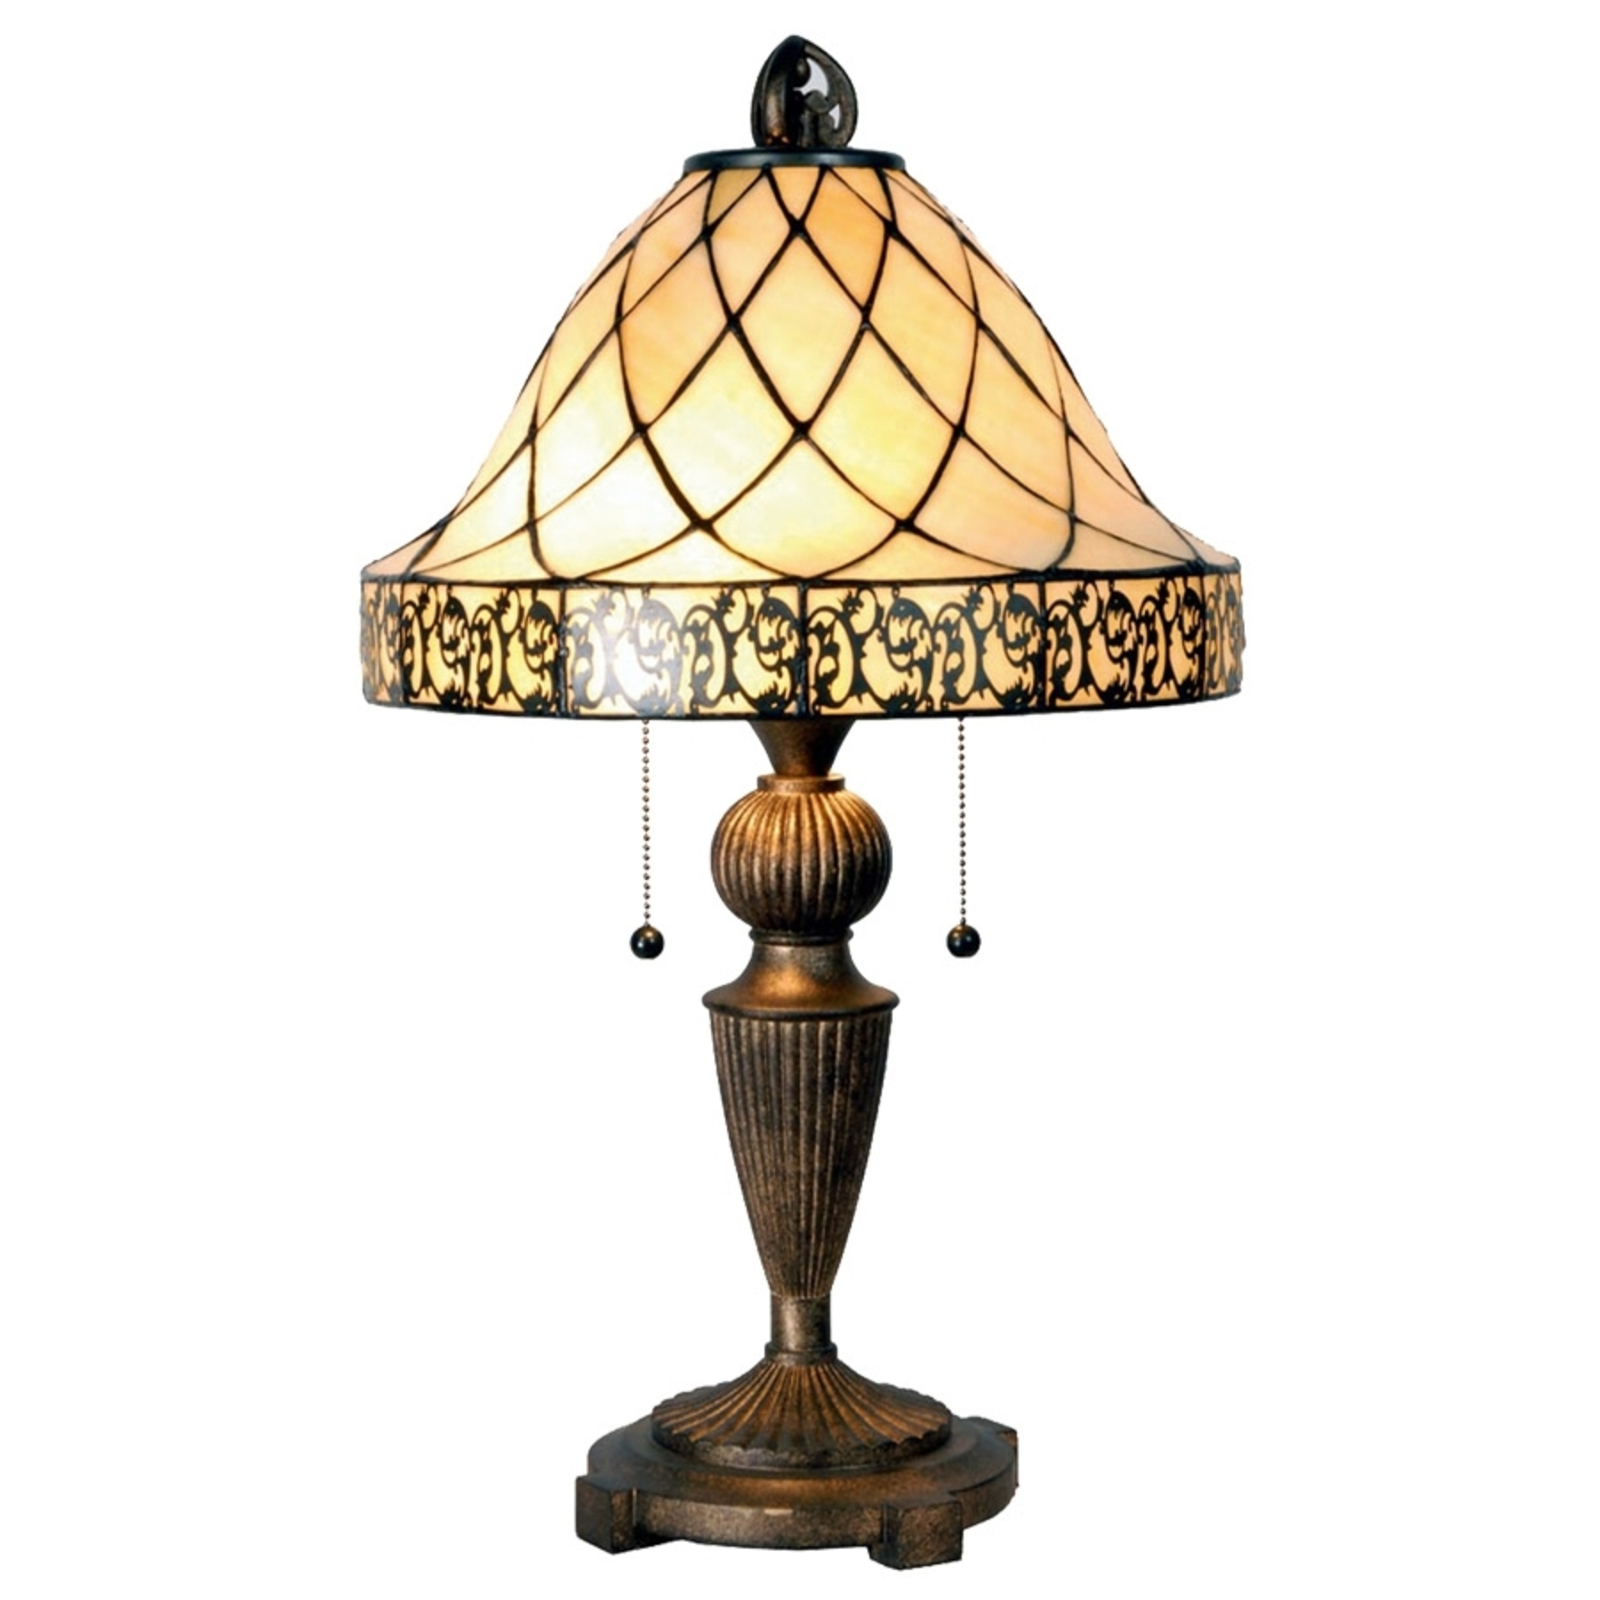 Dijamantna stolna lampa u Tiffany stilu 62 cm